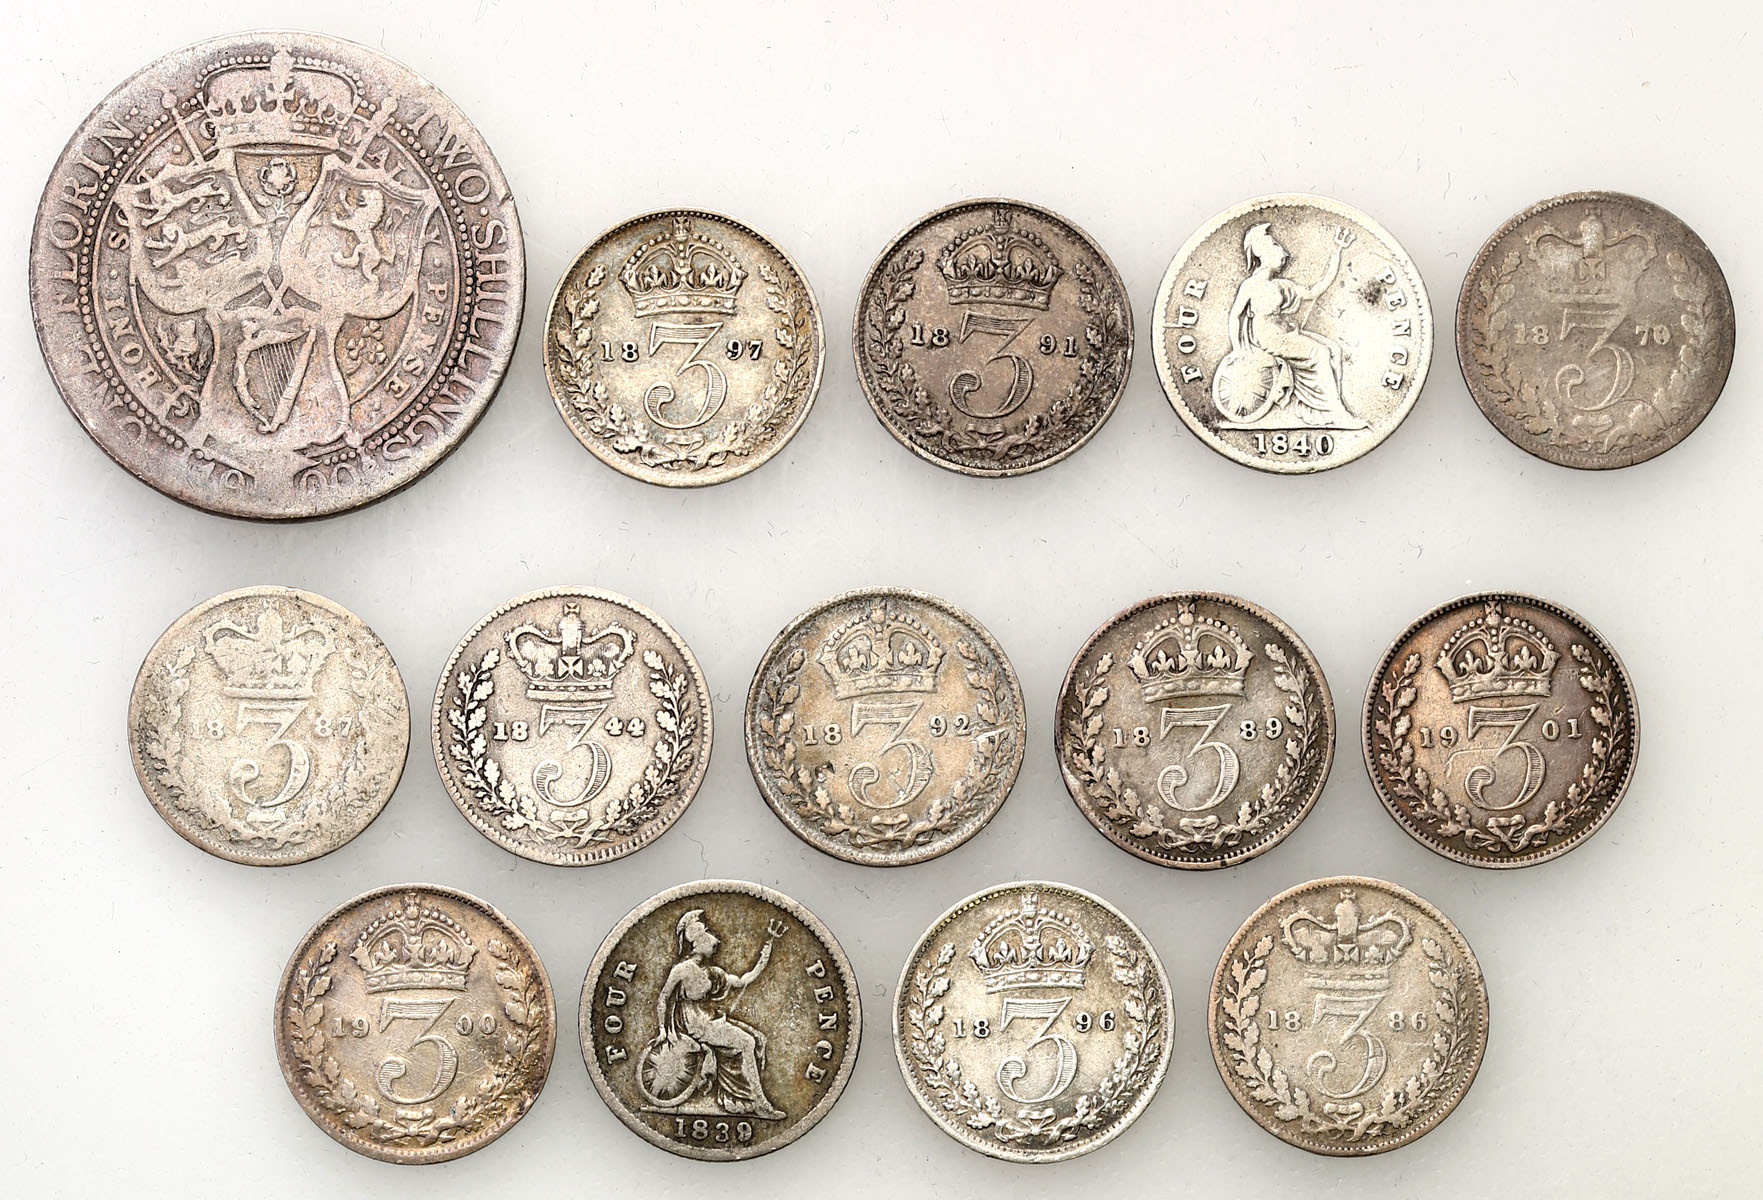 Wielka Brytania. 3, 4 pence 1839-1901, 2 shillings 1900, zestaw 14 monet